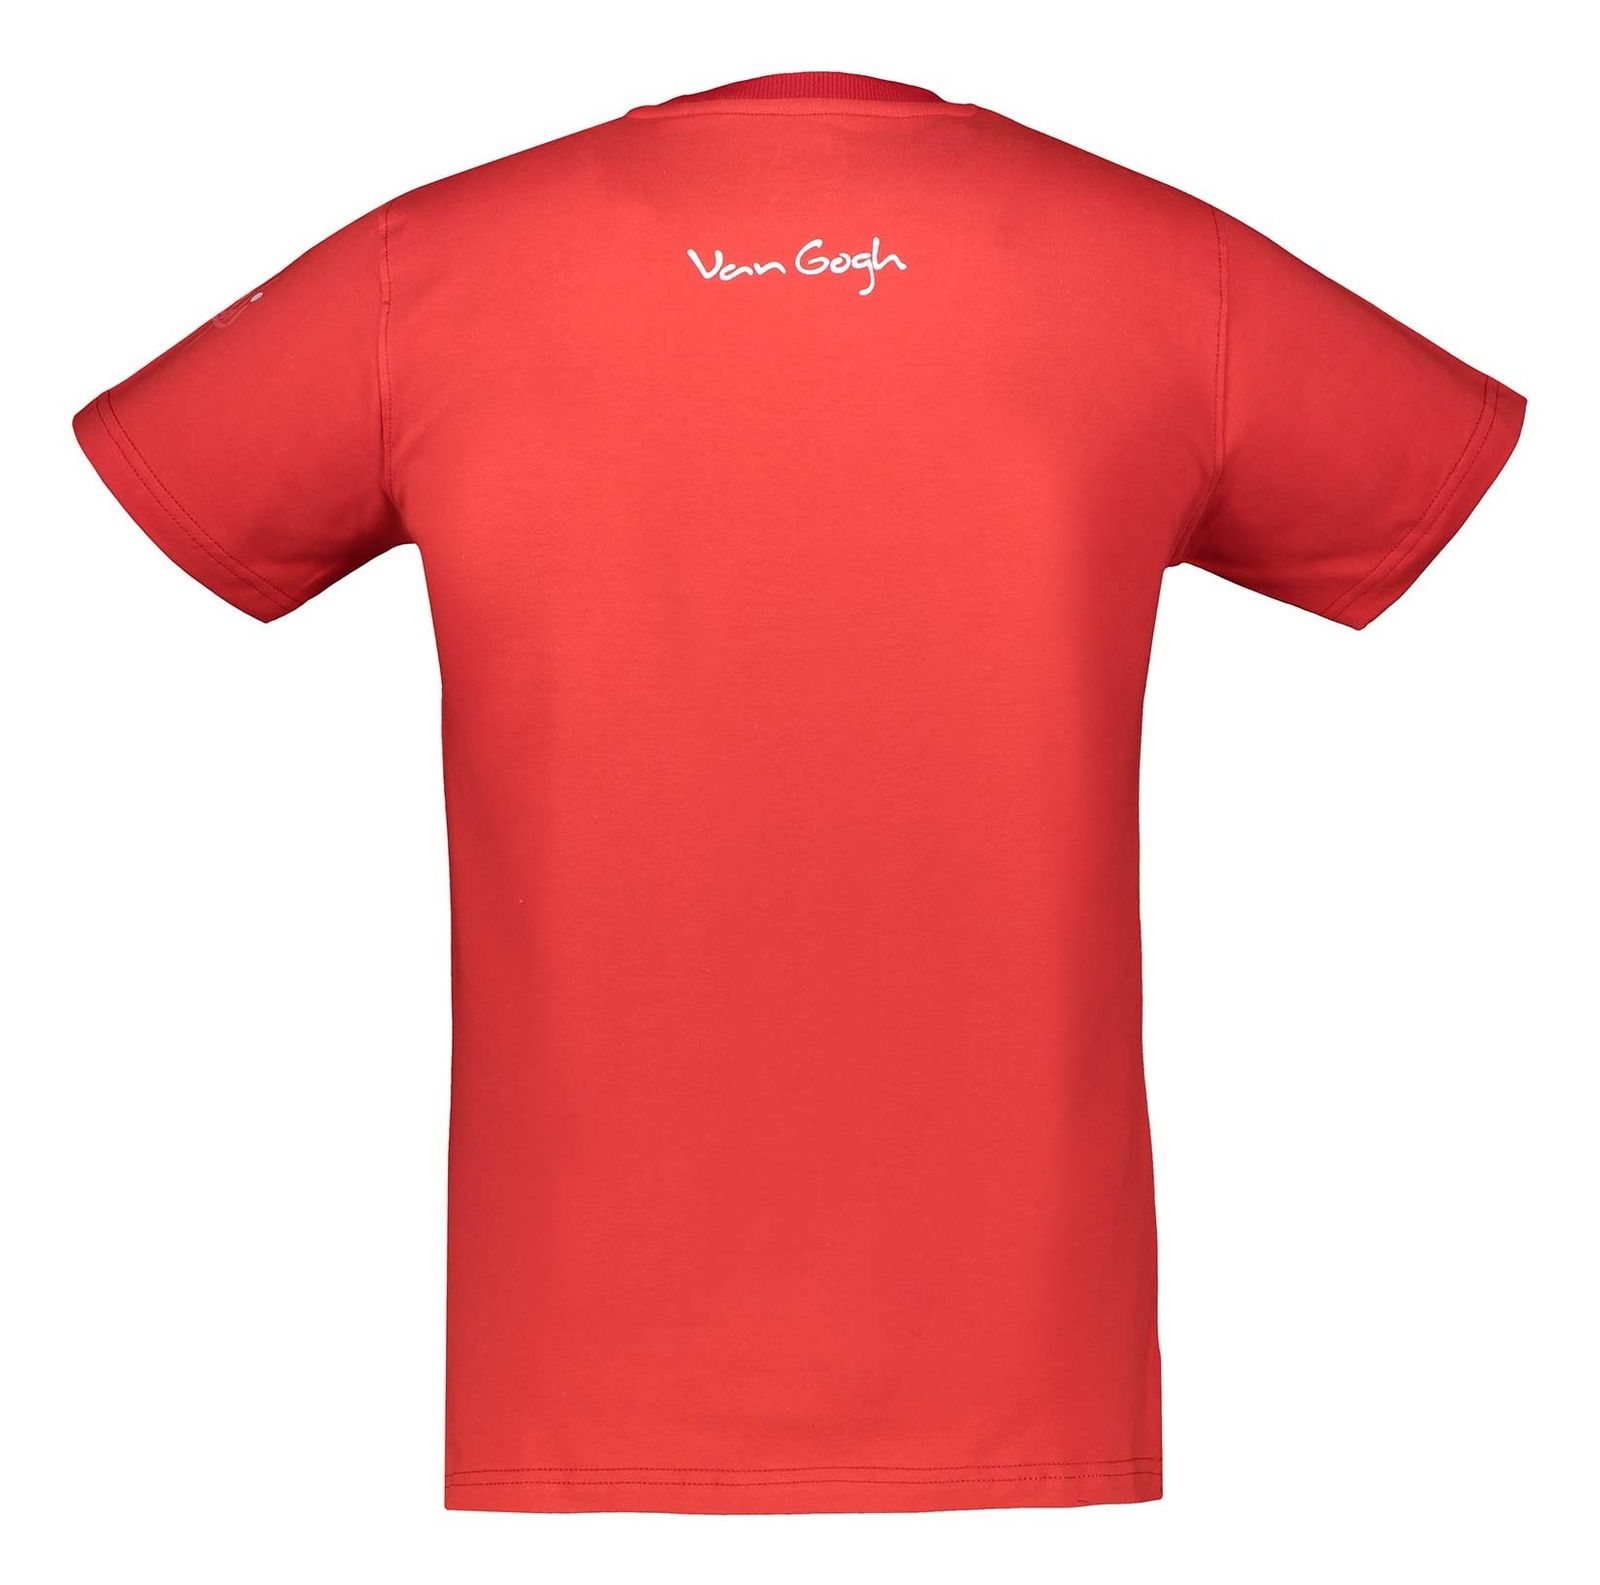 تی شرت نخی یقه گرد مردانه - نامدارز - قرمز  - 3